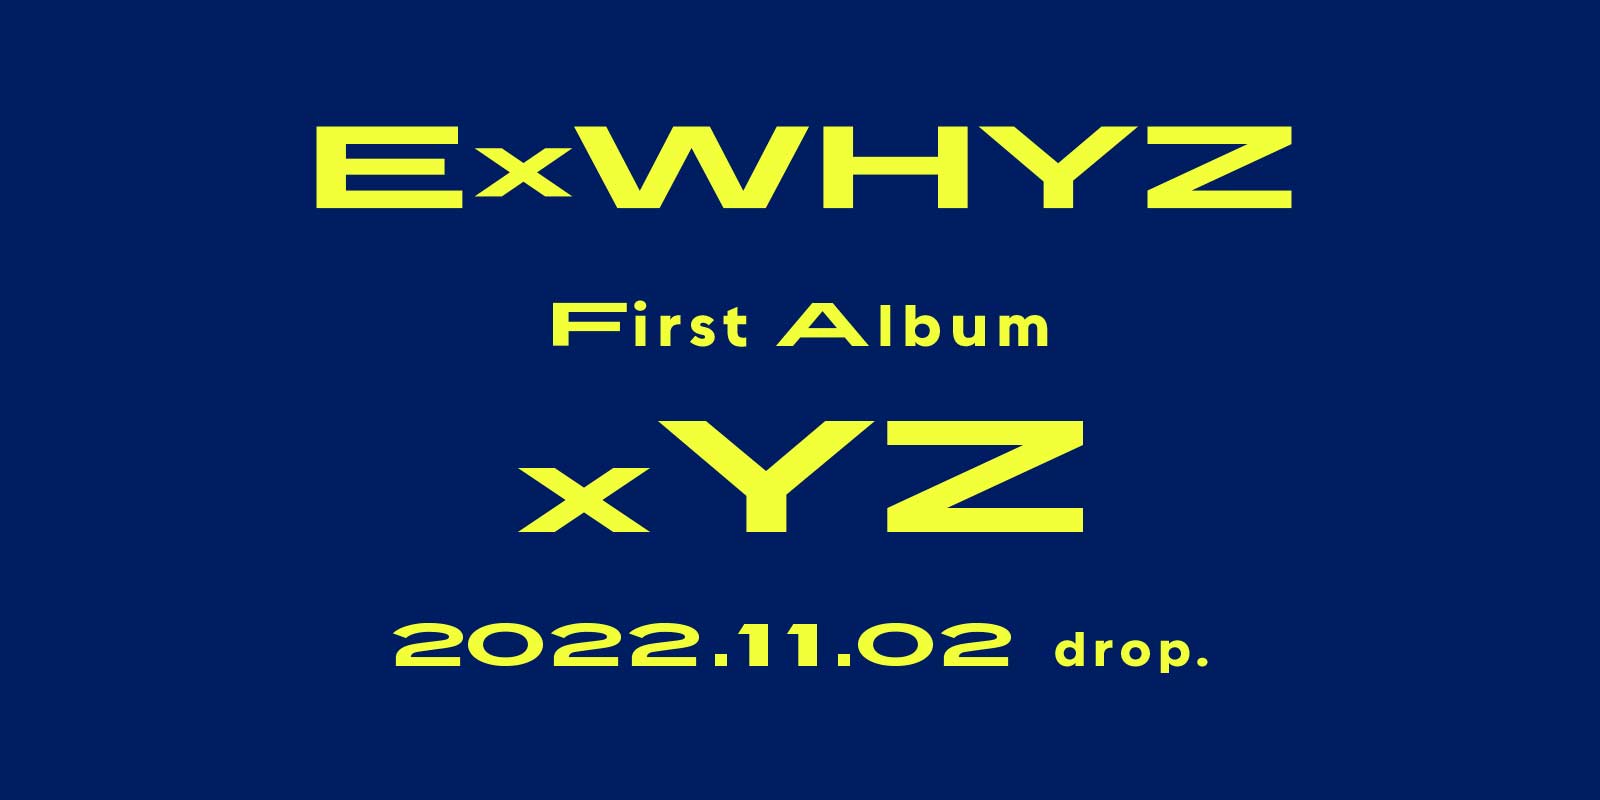 ExWHYZ First Album「xYZ」発売決定